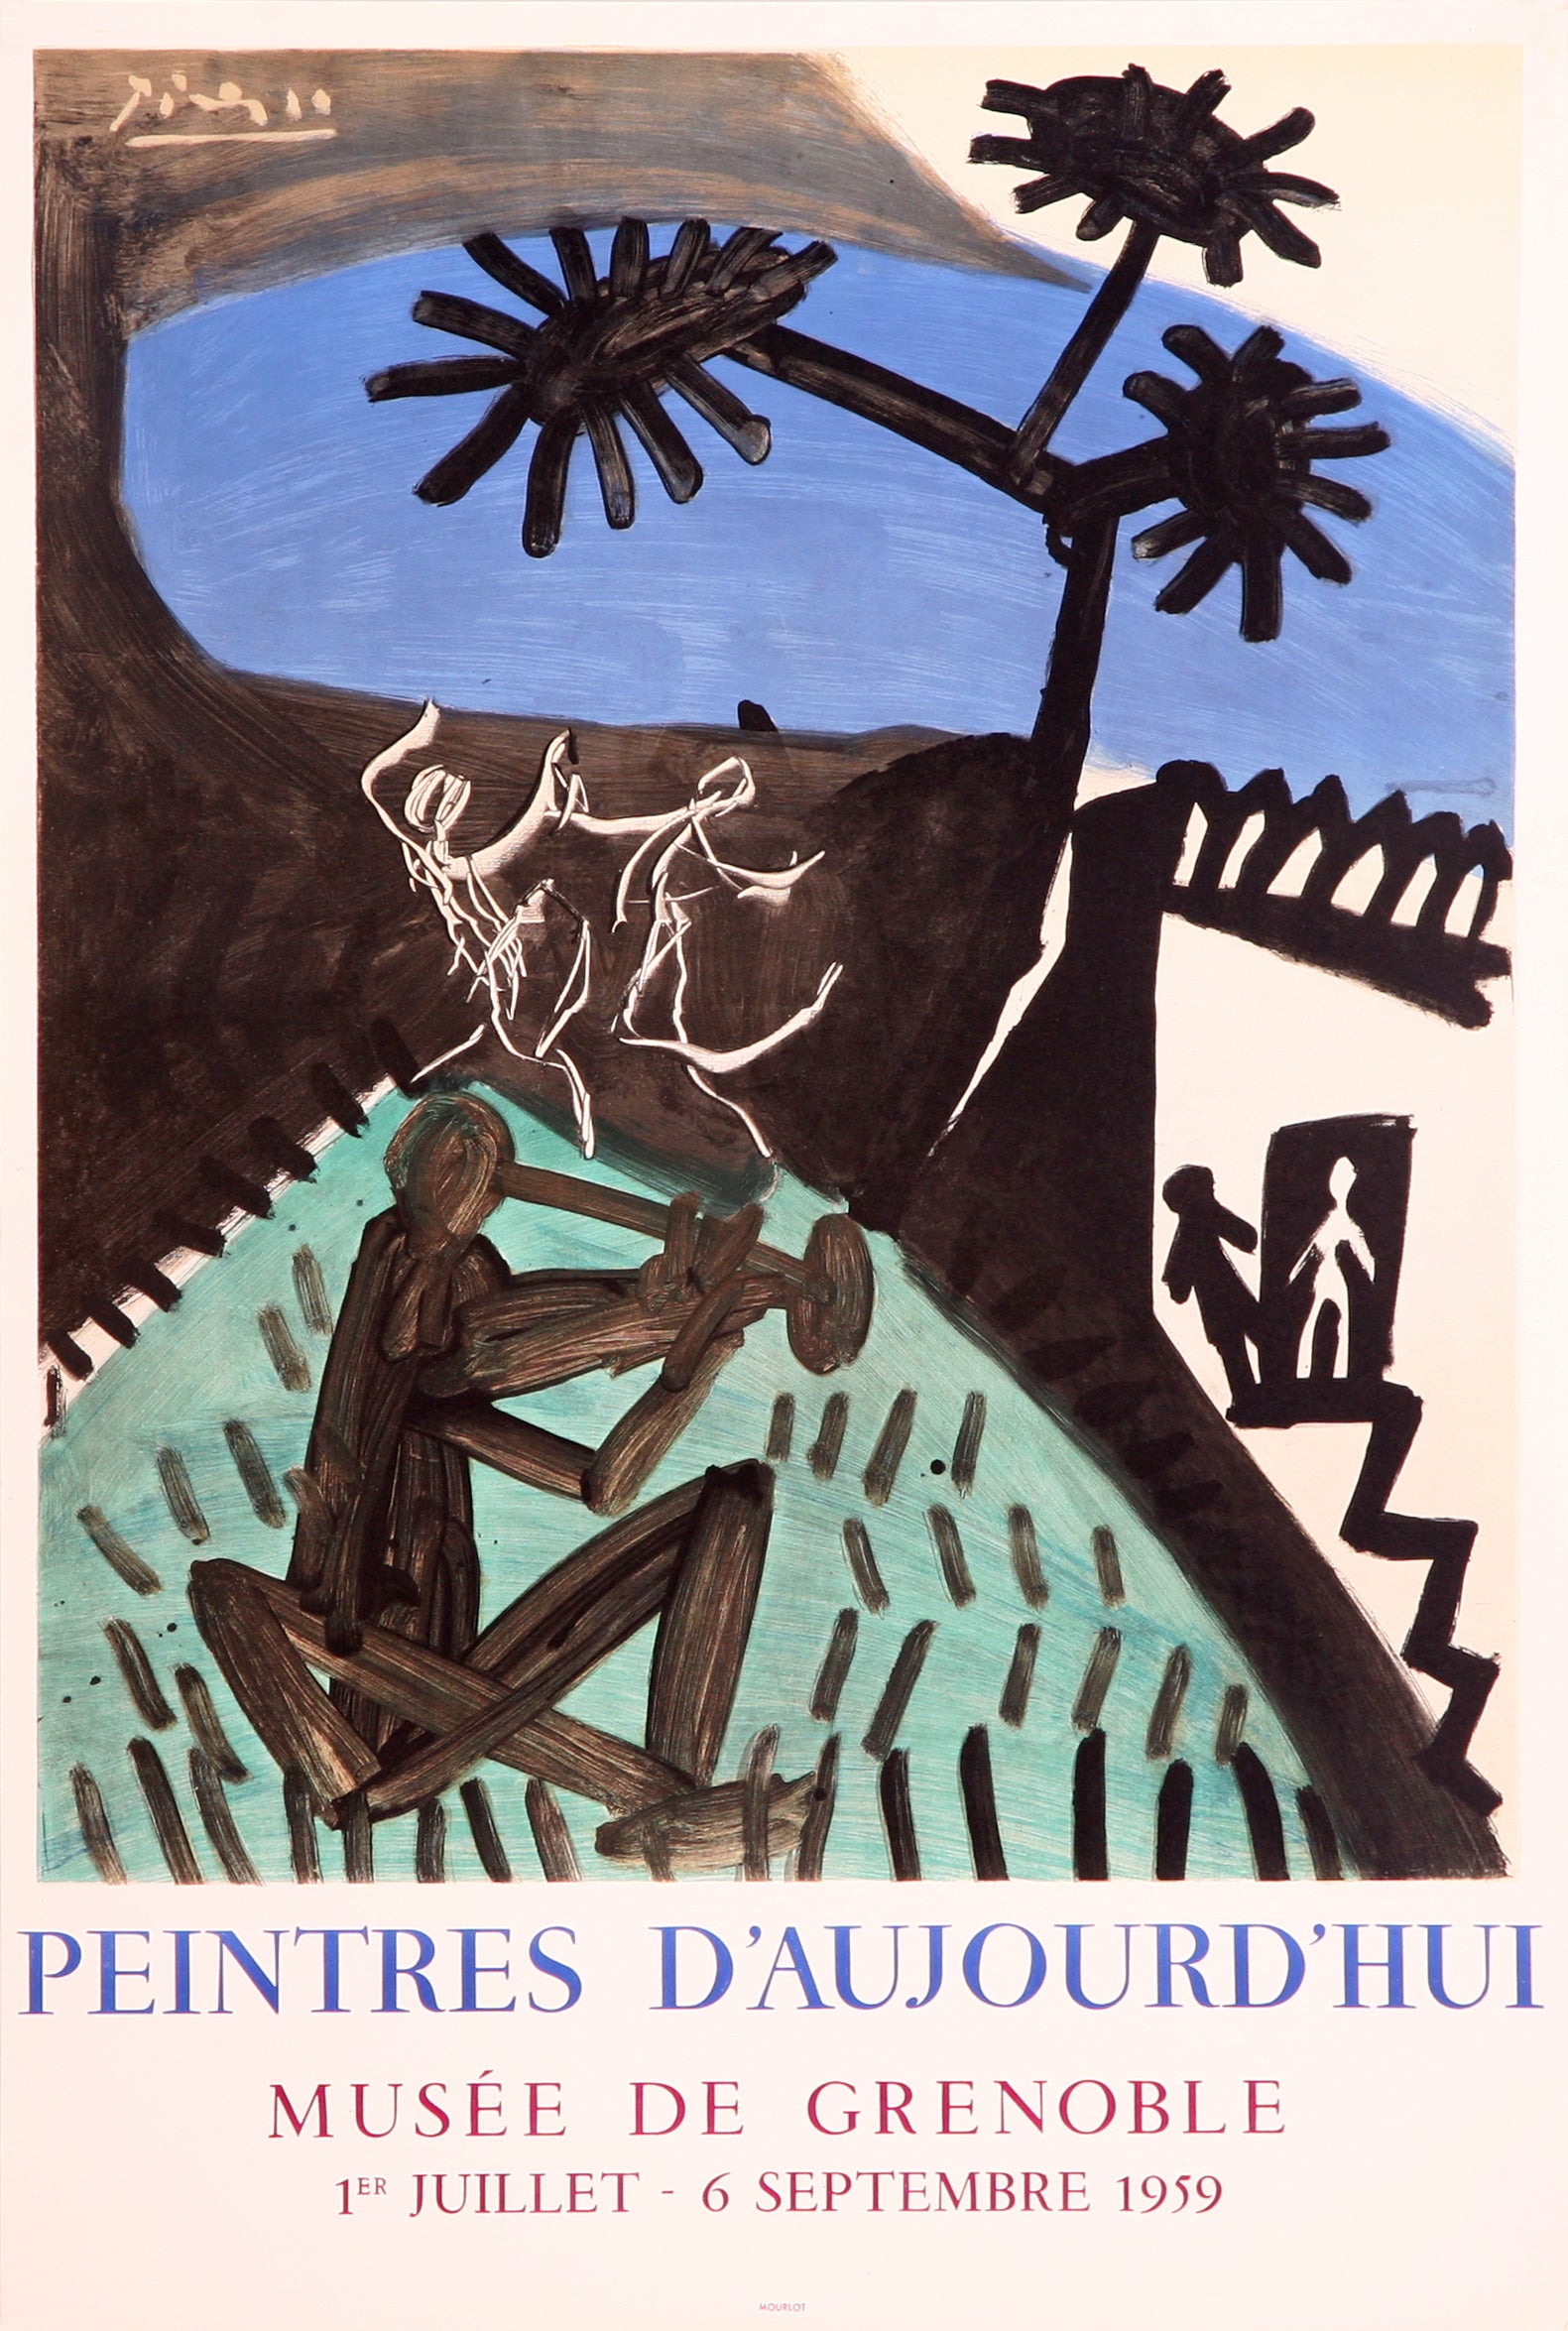 Peintres d'aujourd'hui, Musée de Grenoble by Pablo Picasso - Mourlot Editions - Fine_Art - Poster - Lithograph - Wall Art - Vintage - Prints - Original